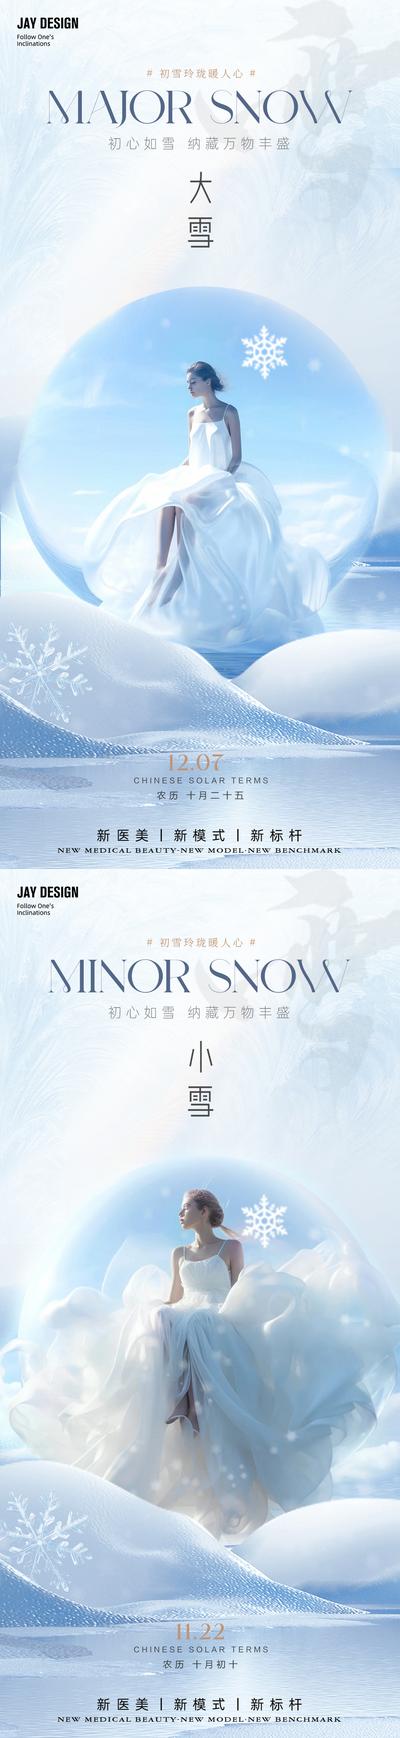 南门网 广告 海报 电商 小雪 医美 节气 人物 系列 大雪 二十四节气 雪花 微商 整形 唯美